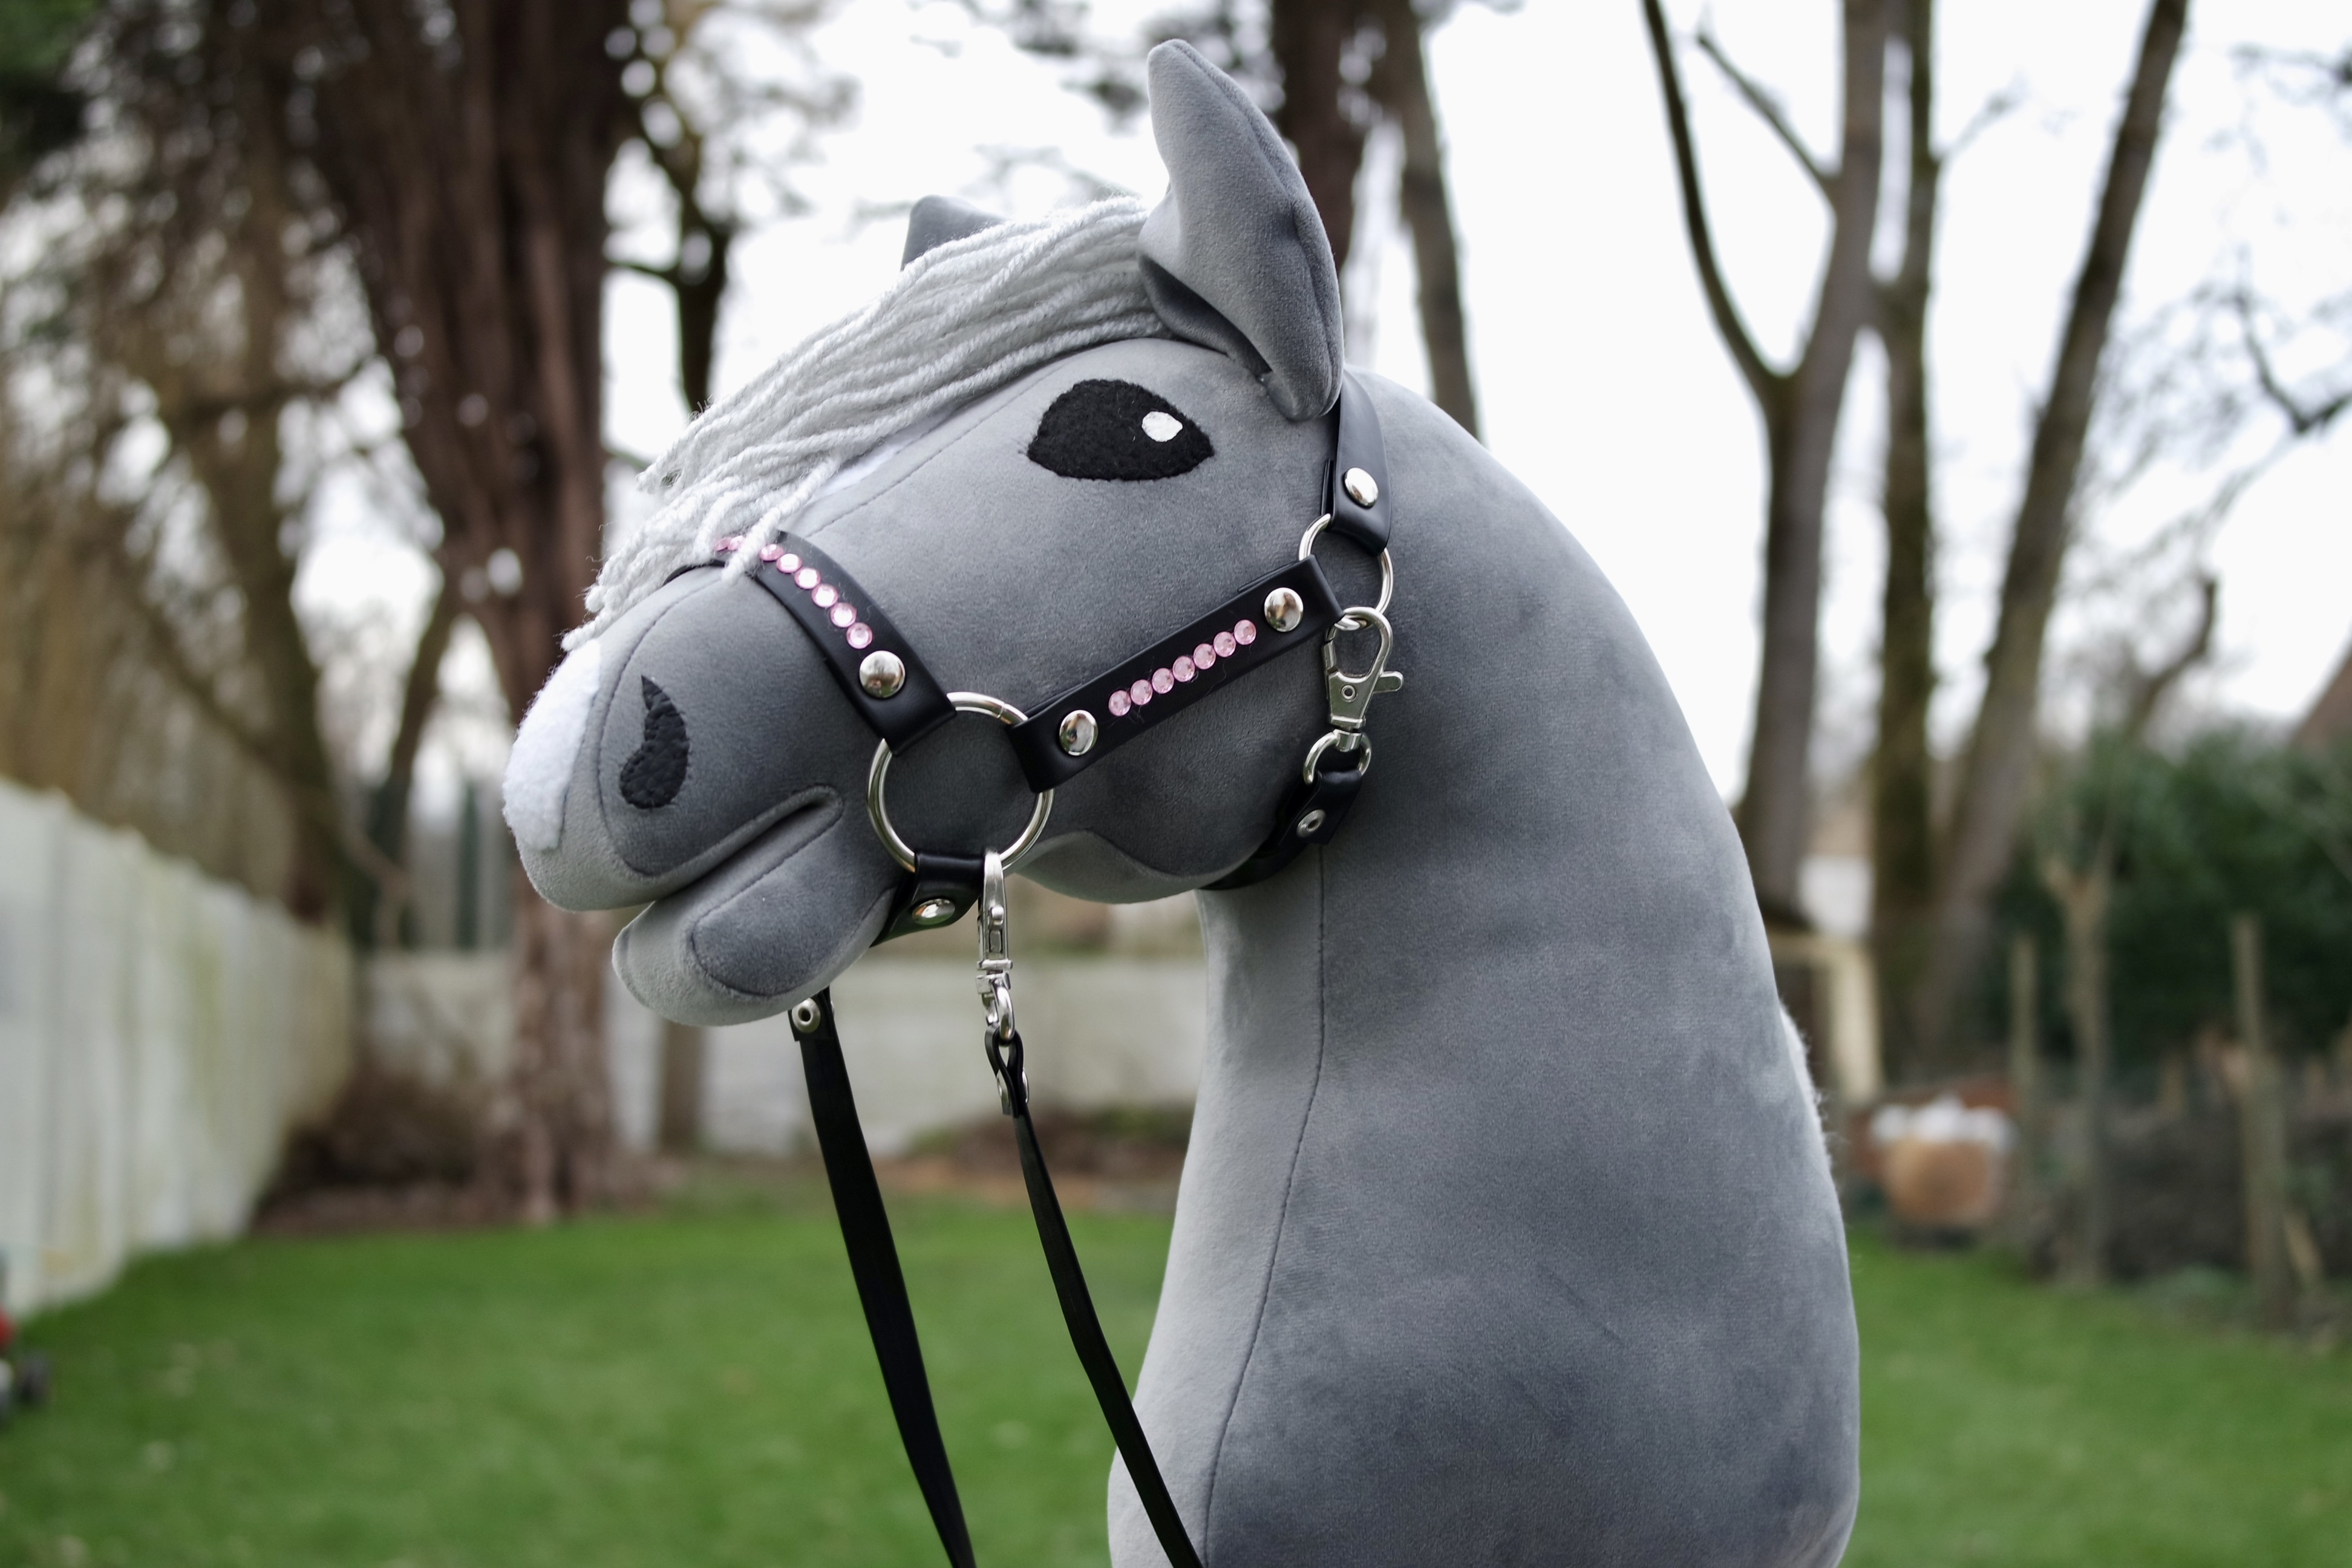 horsing is paardrijden paard, en is meteen de aller hipste corona-hobby die je kan bedenken!